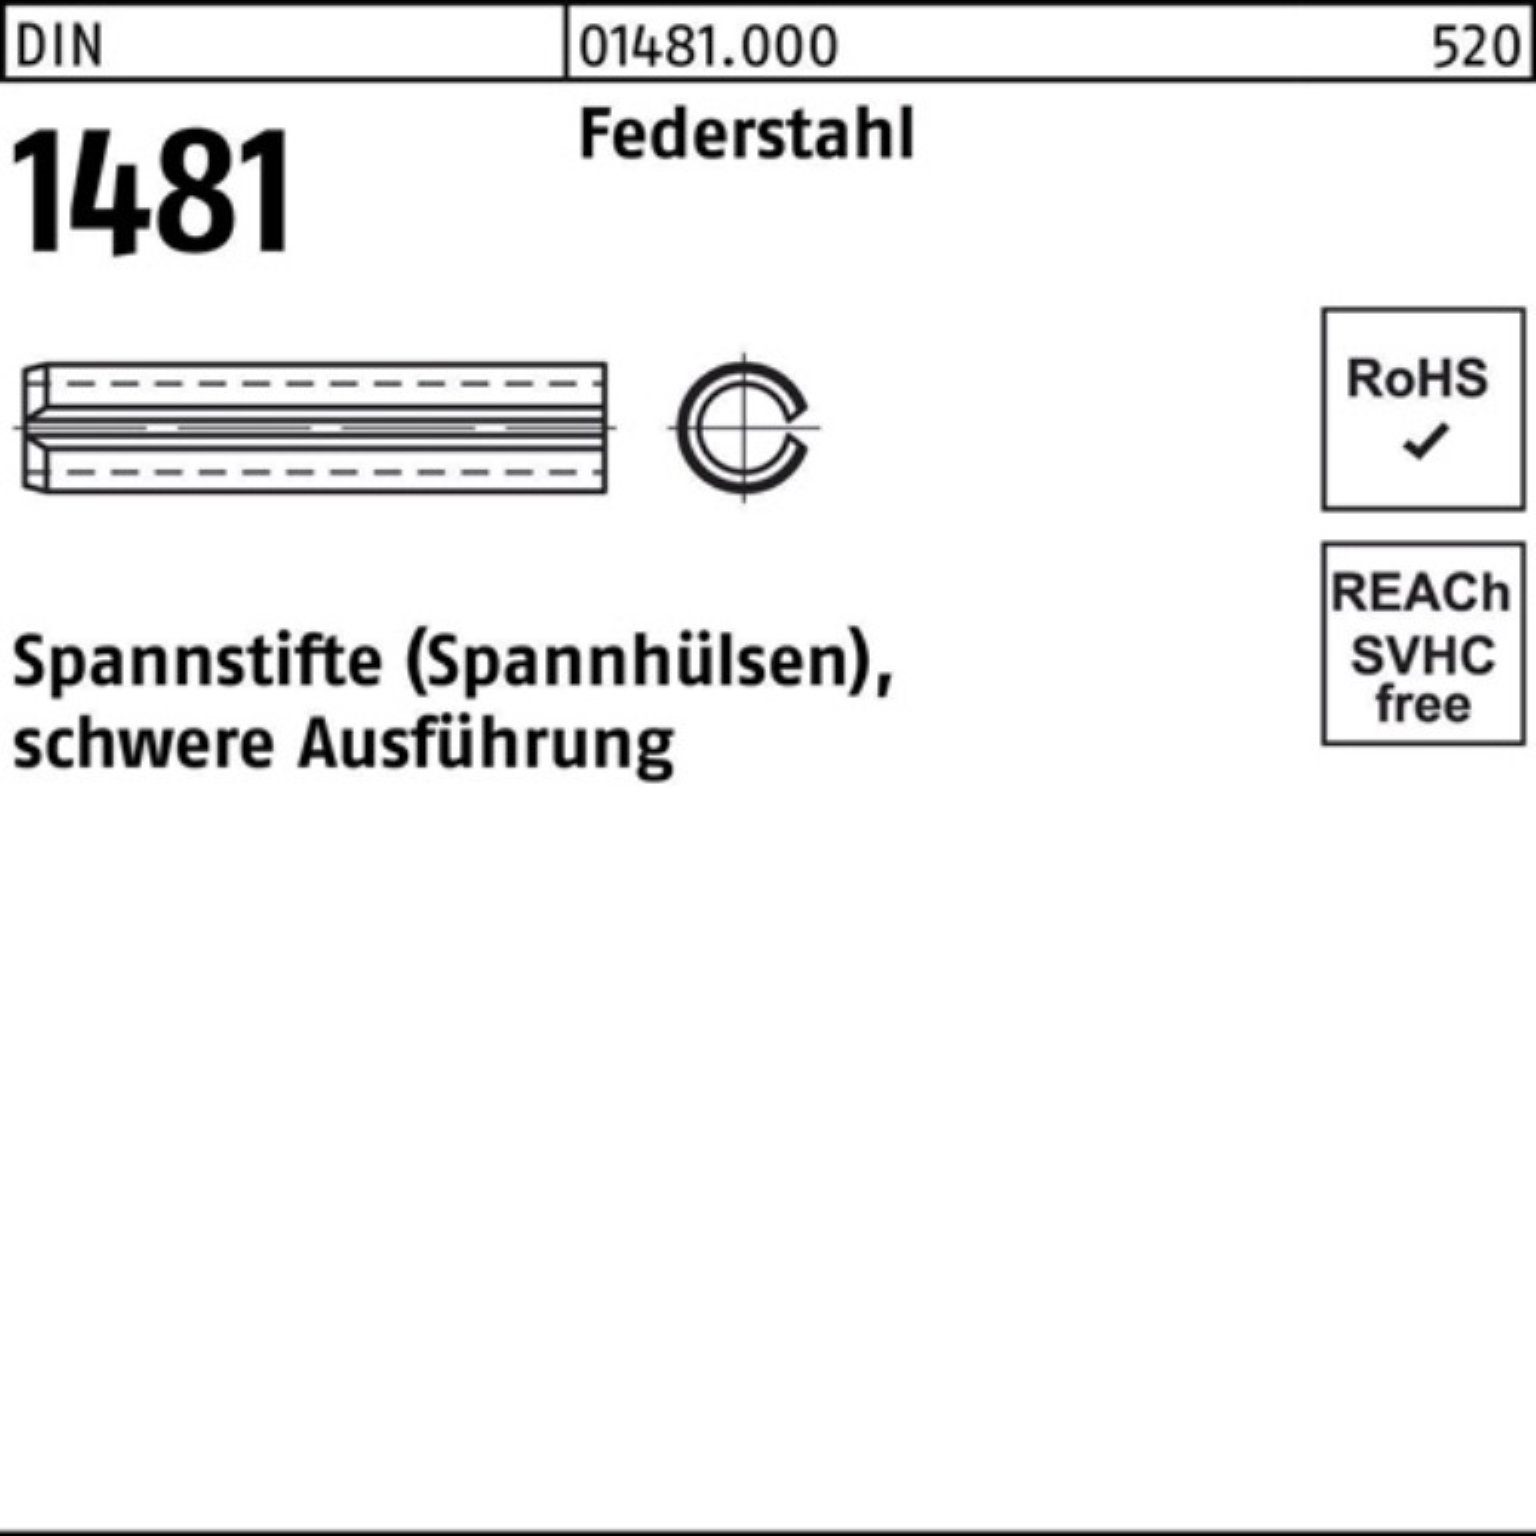 Reyher Spannstift 100er Pack Spannstift DIN 1481 10x 45 Federstahl schwere Ausführung 1